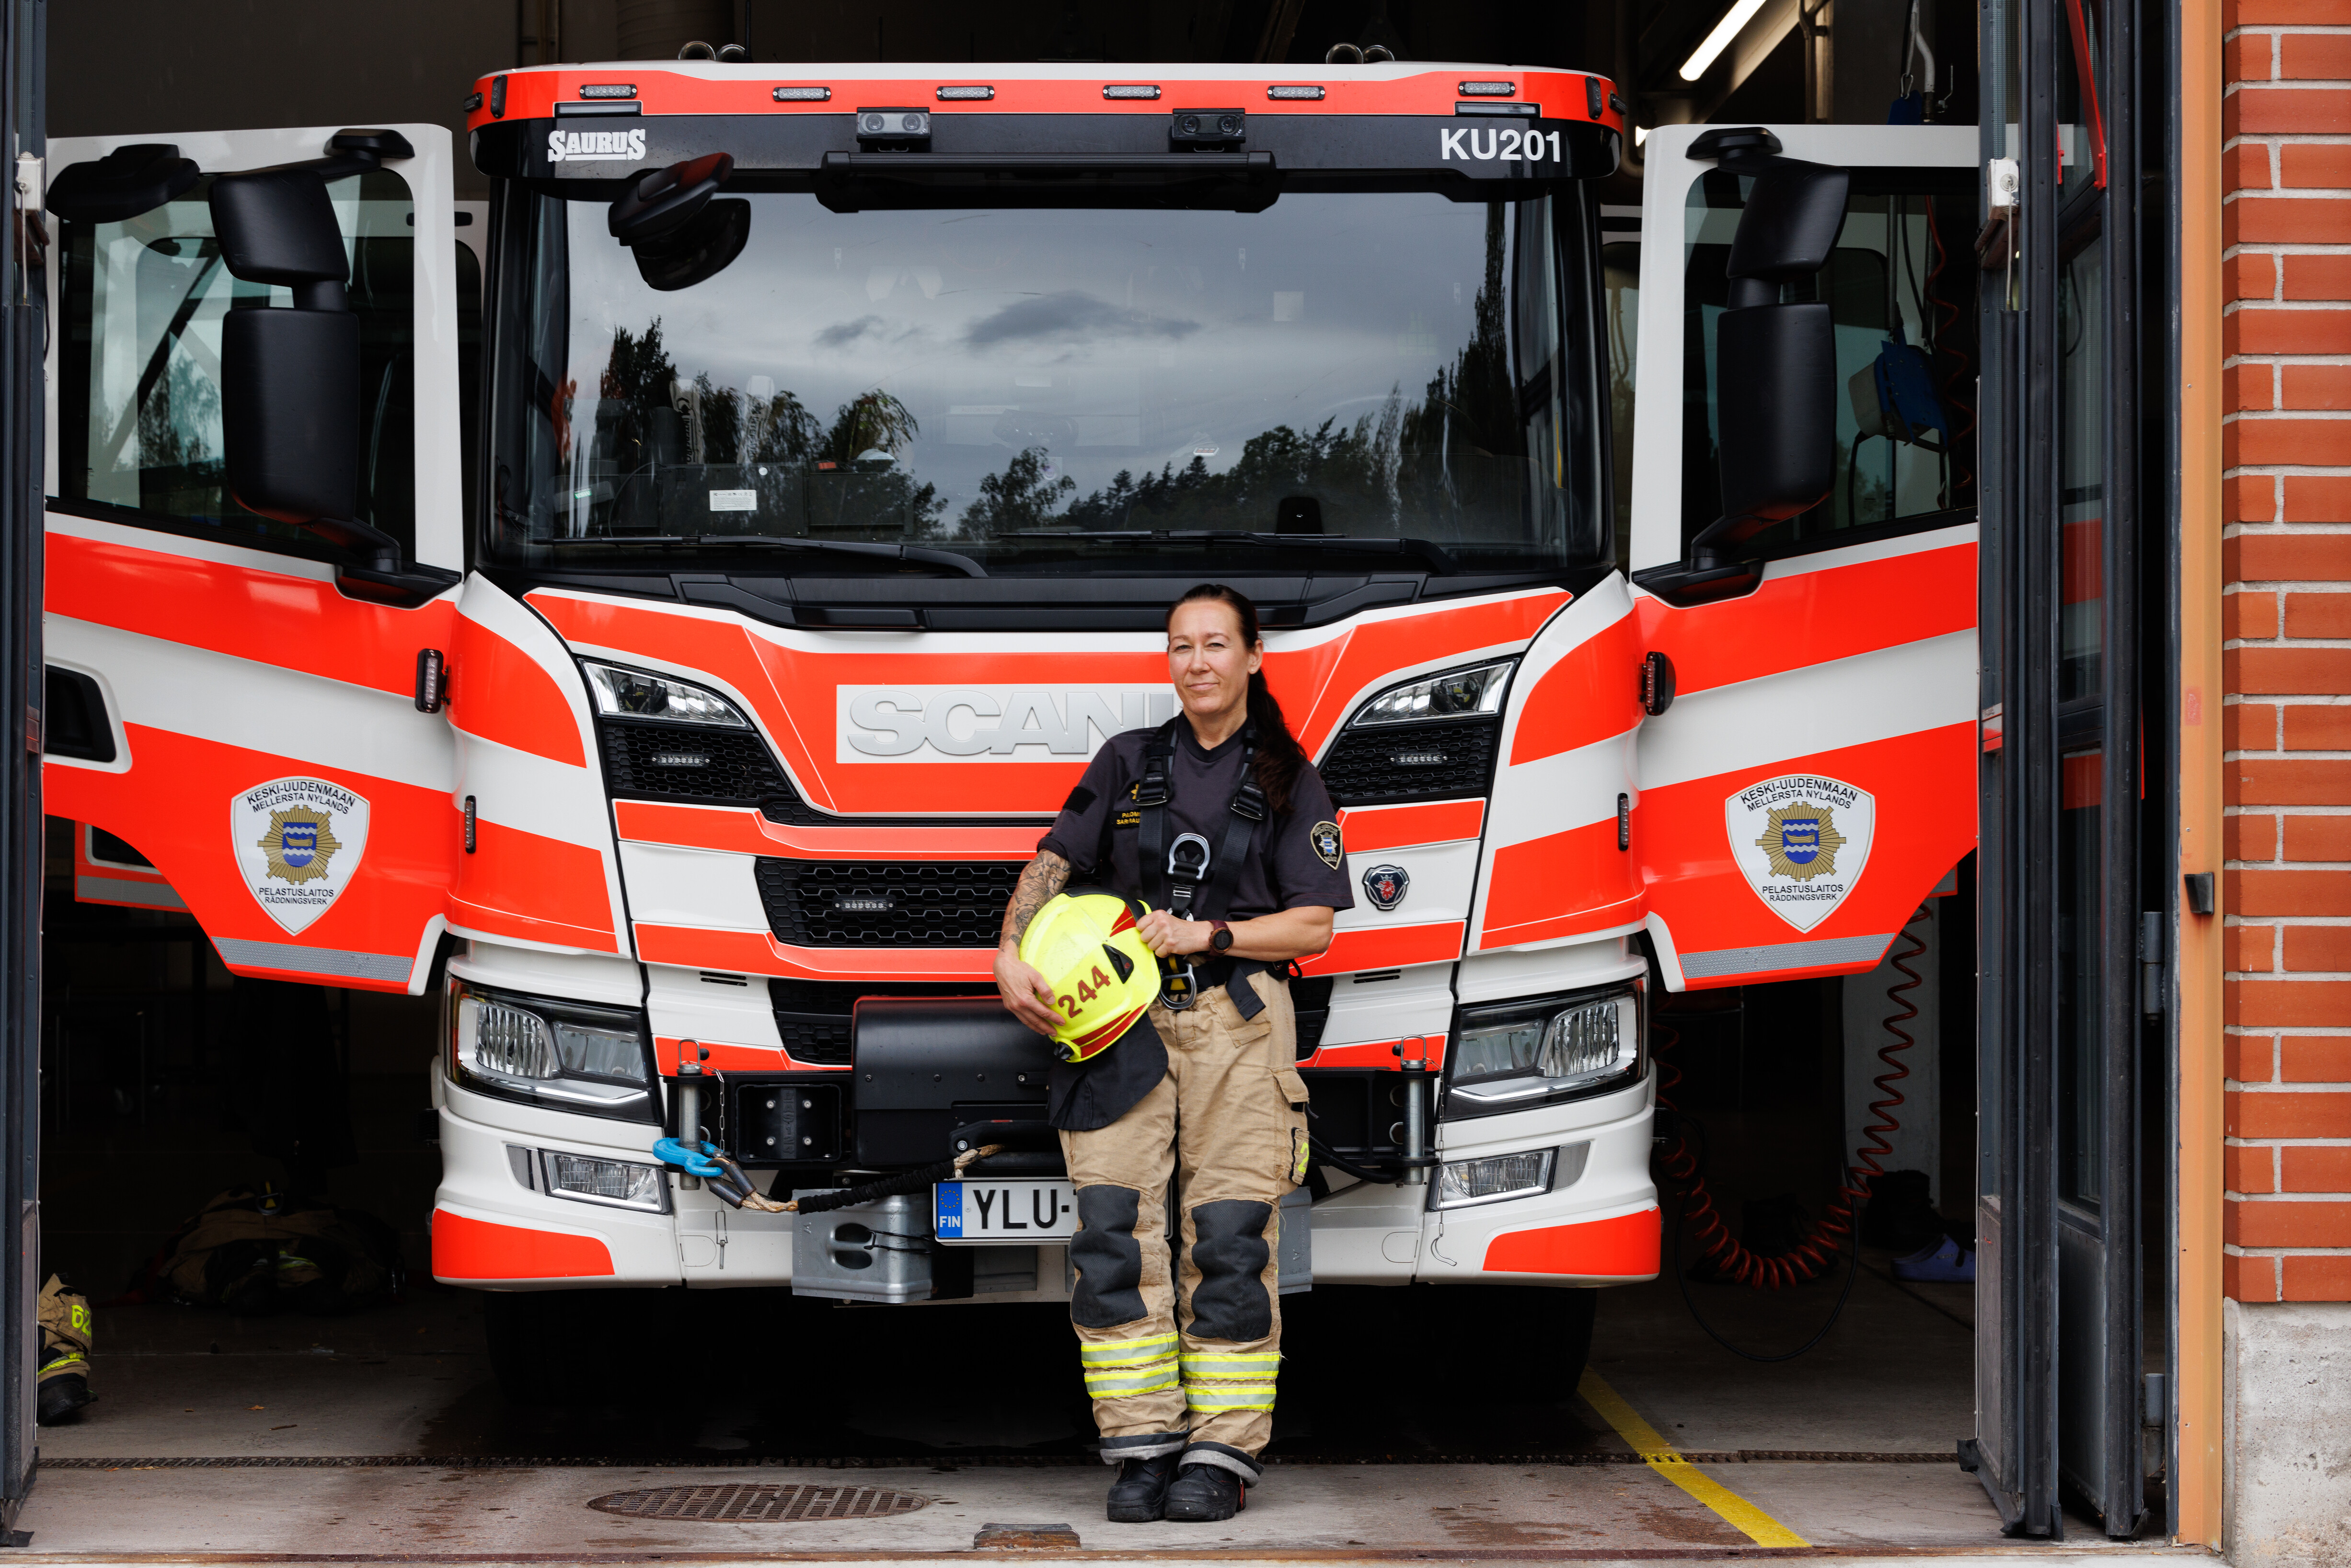 Sari Rautiala pelastajan varusteissa, kypärä kädessä paloauton edessä.